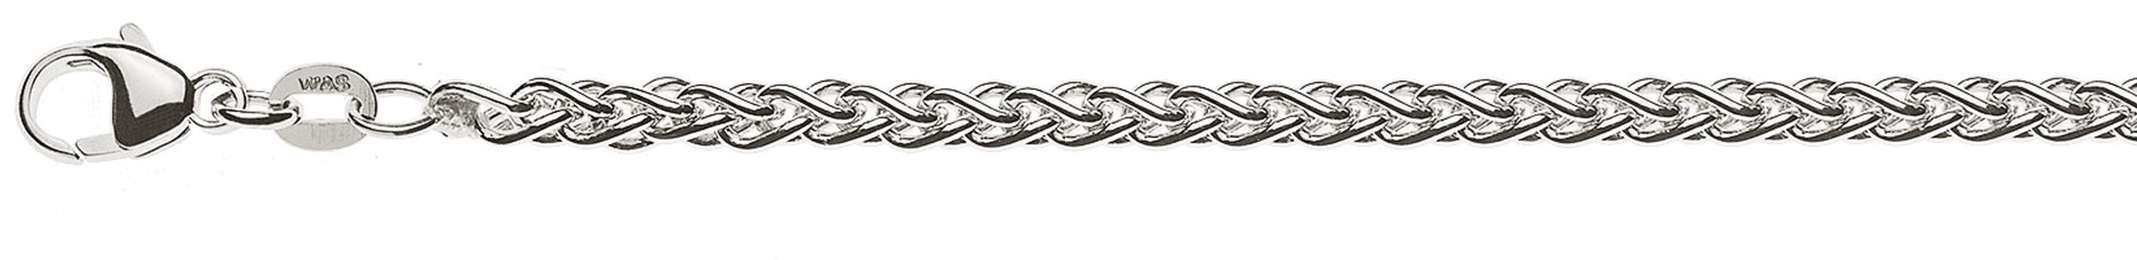 AURONOS Prestige Necklace white gold 18K cable chain 45cm 3.3mm